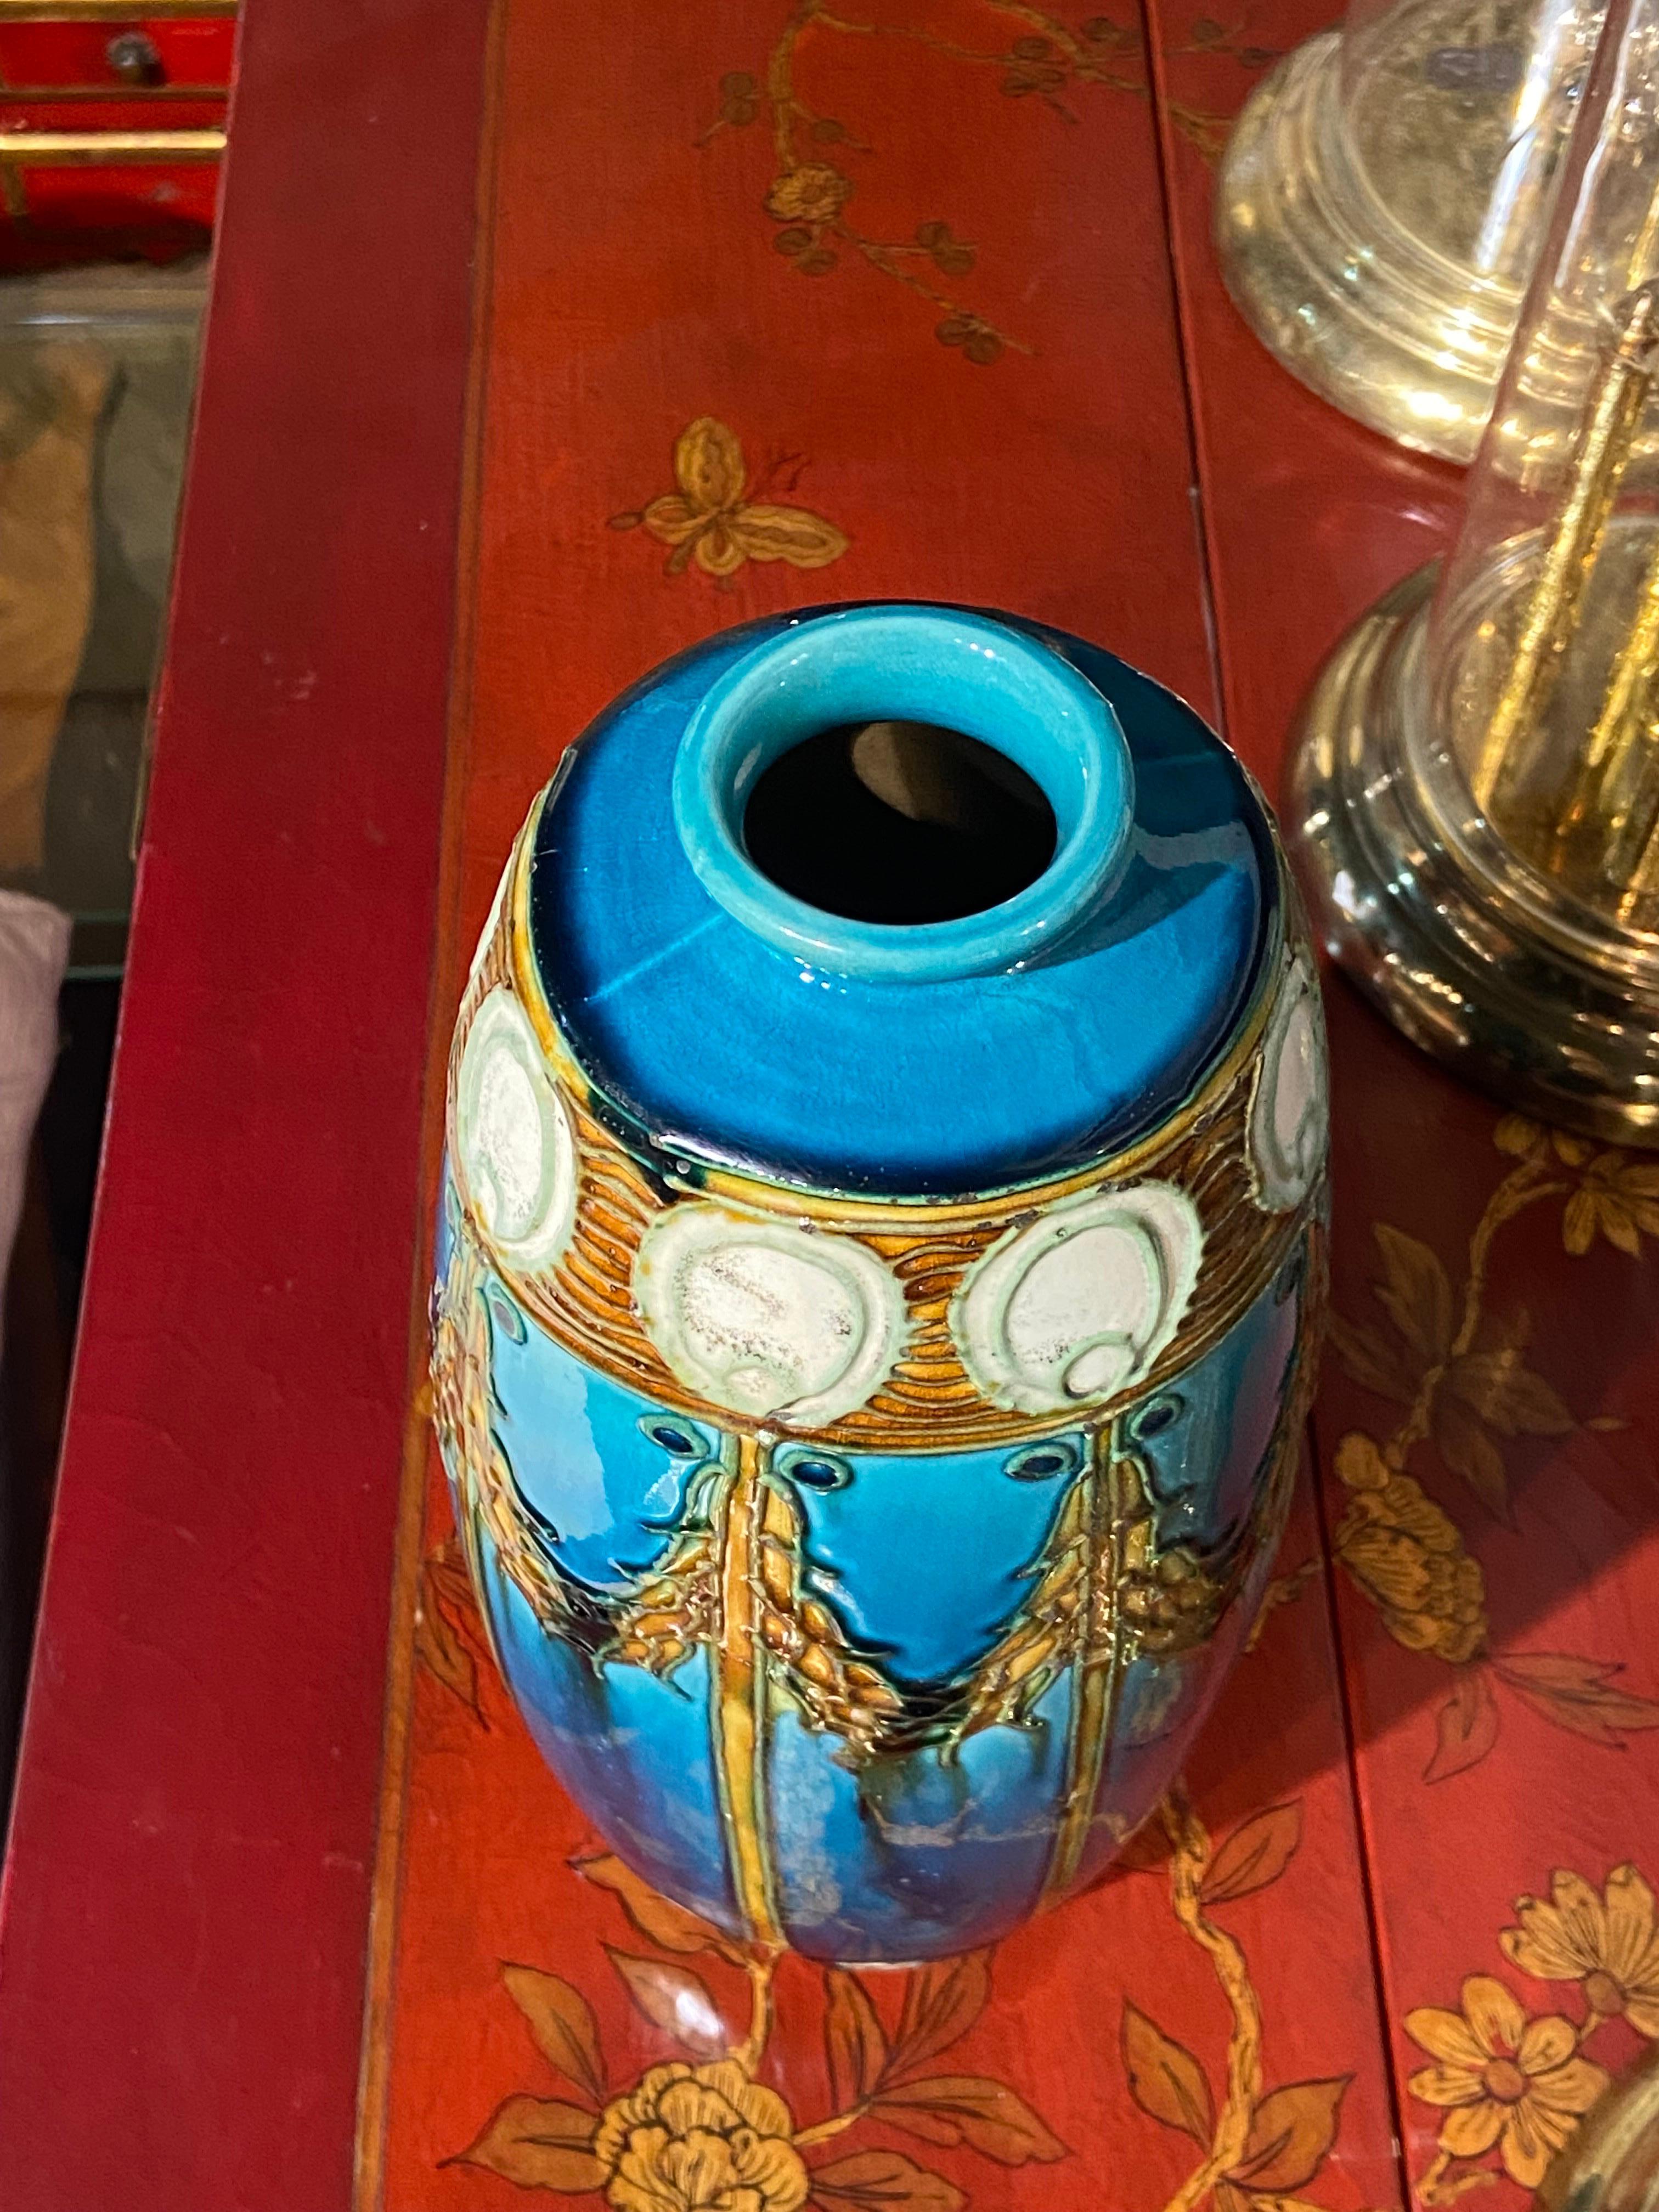 19th Century Blu Ceramic Seccessionist Art Nouveau Vase by Leon Solon In Good Condition For Sale In Sofia, BG